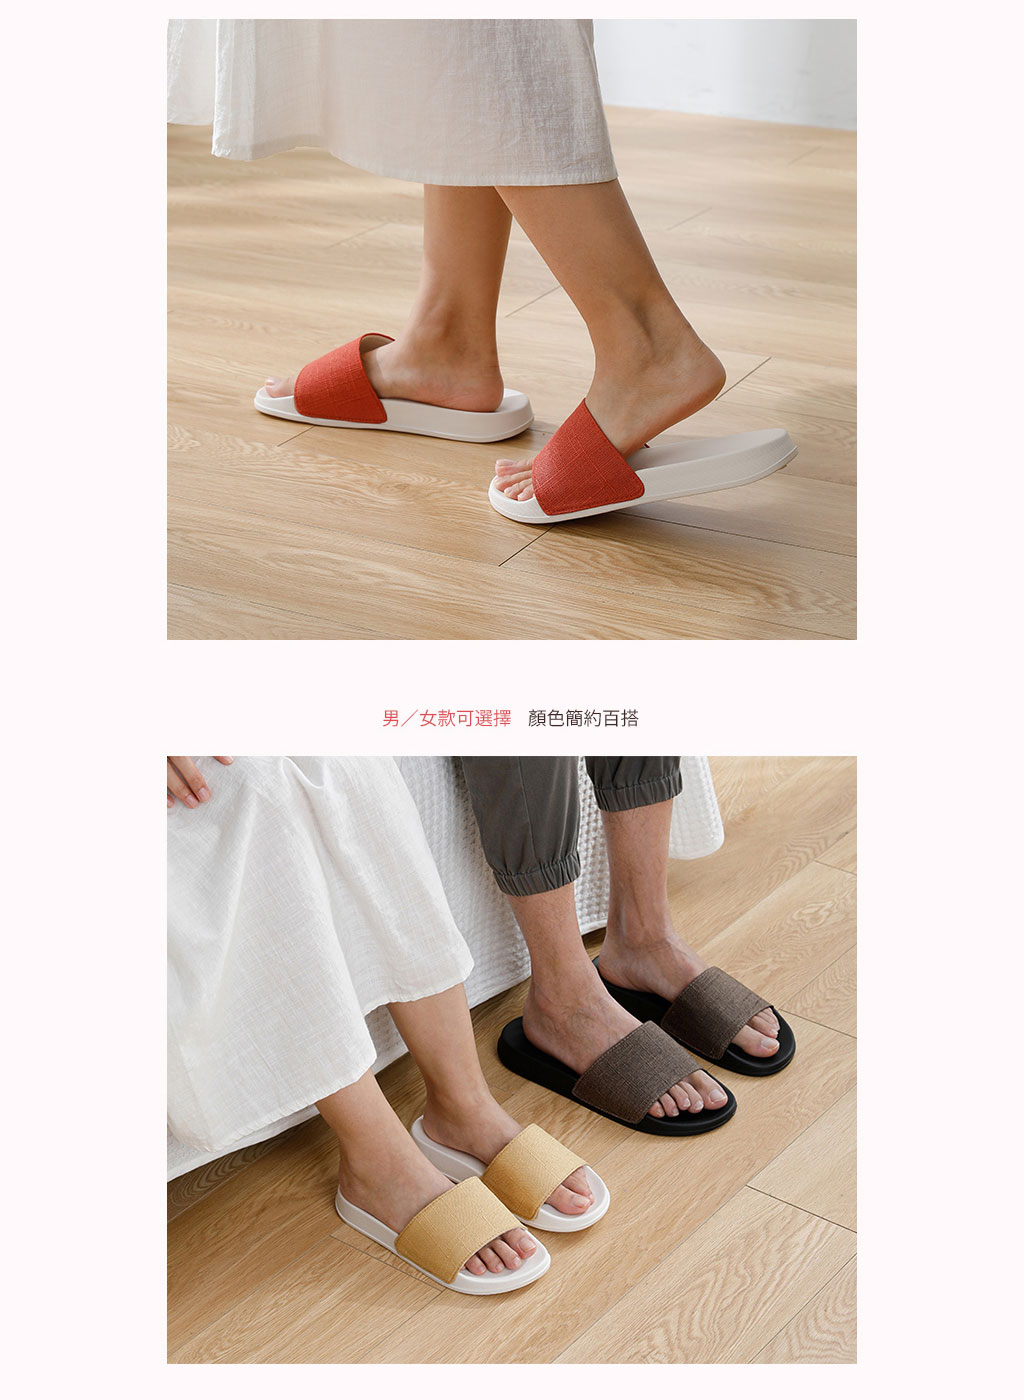 日本霜山 EVA日系極簡舒壓 防滑拖鞋 (室內/室外用) 多色男女款可選